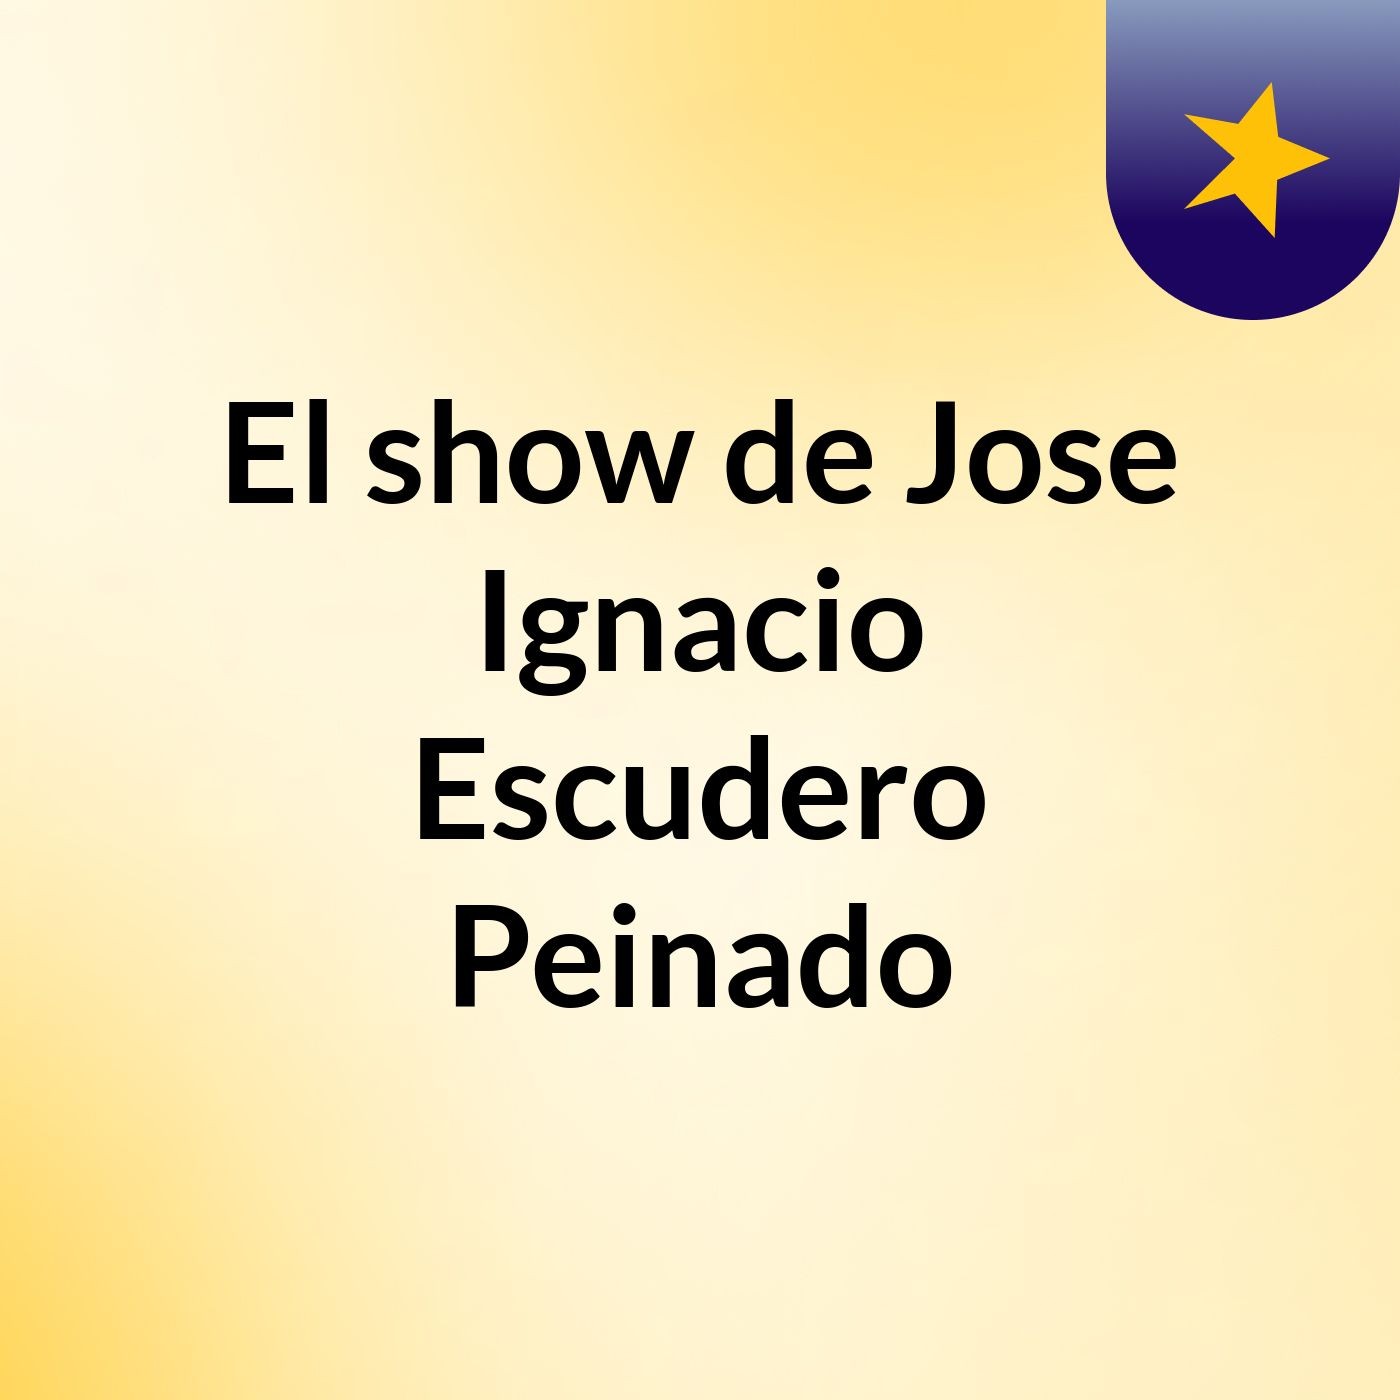 El show de Jose Ignacio Escudero Peinado